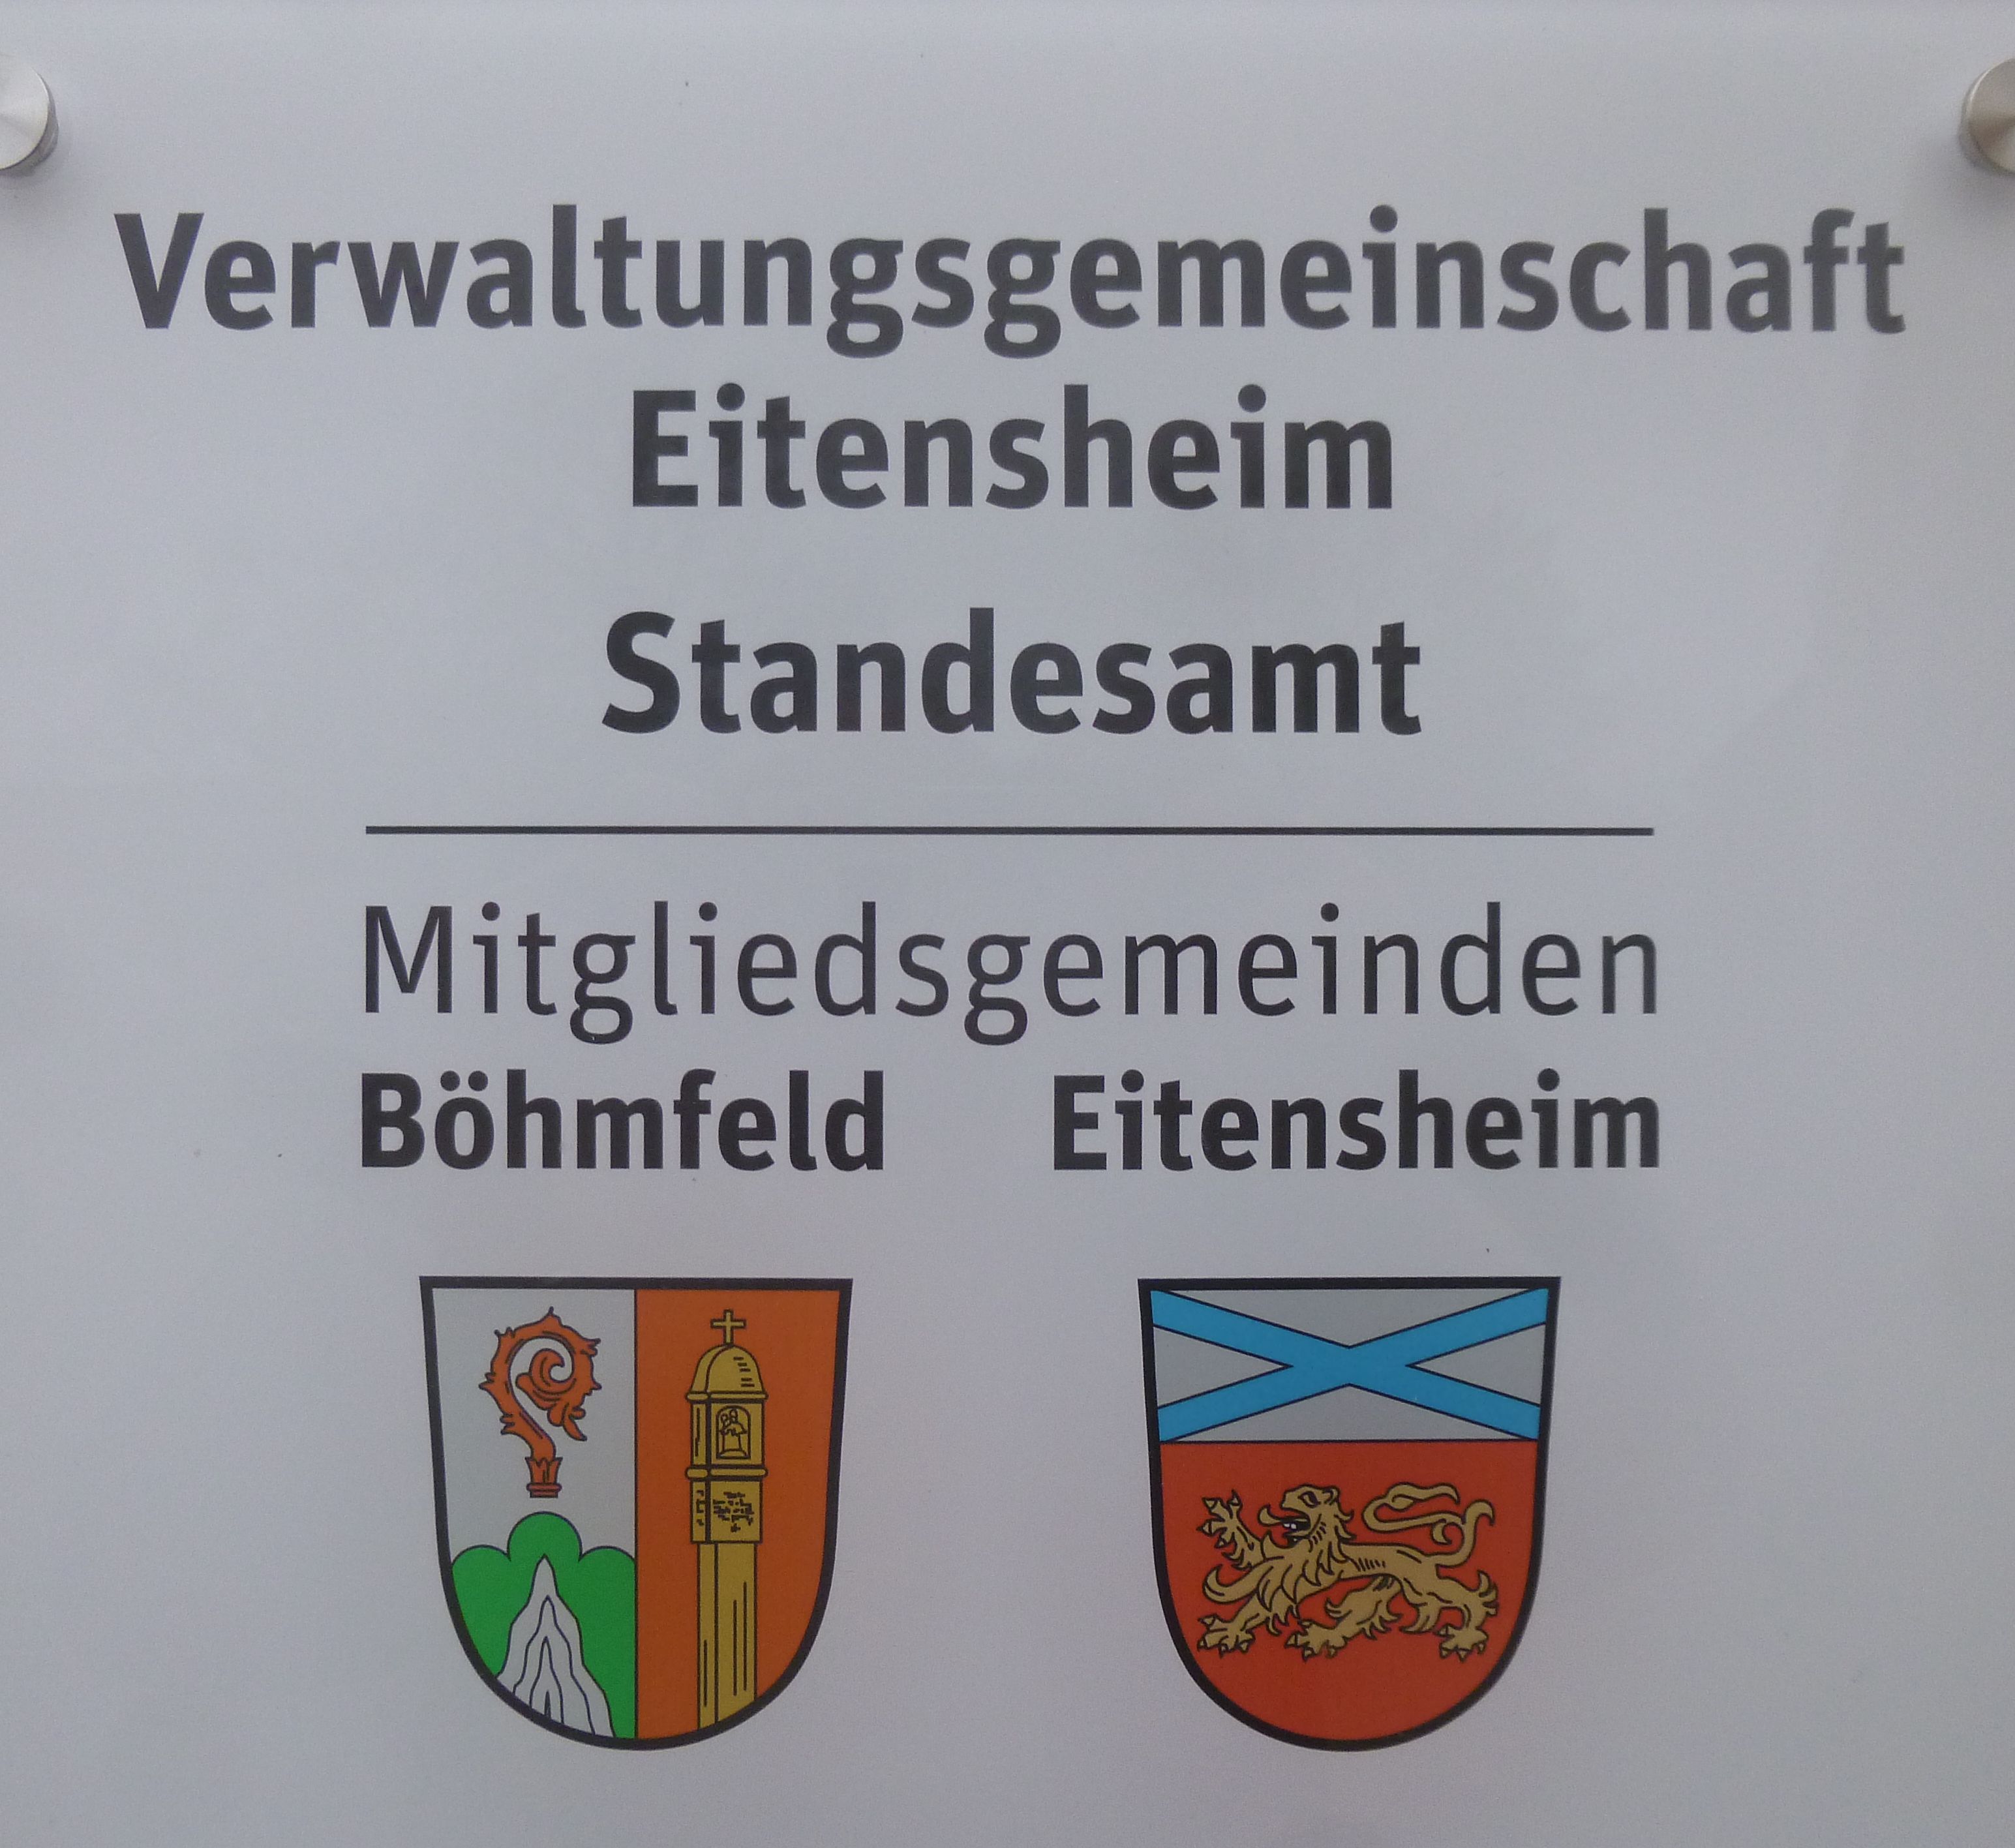 Die Verwaltungsgemeinschaft Eitensheim ist